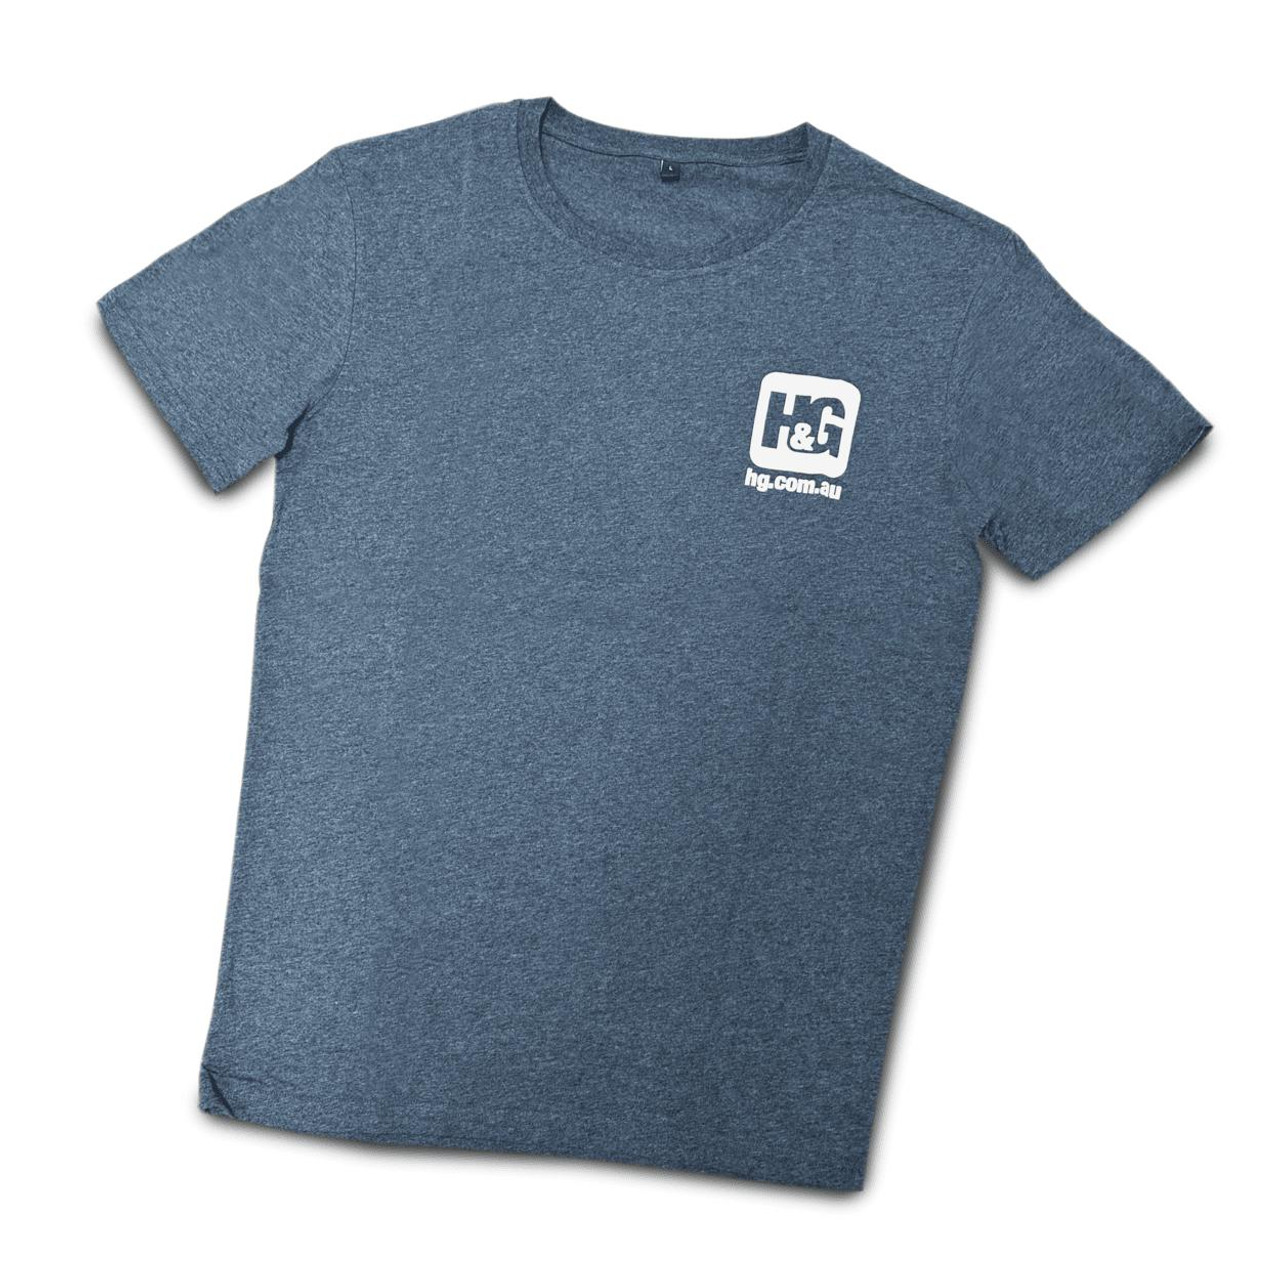  H&G T-Shirt Charcoal 